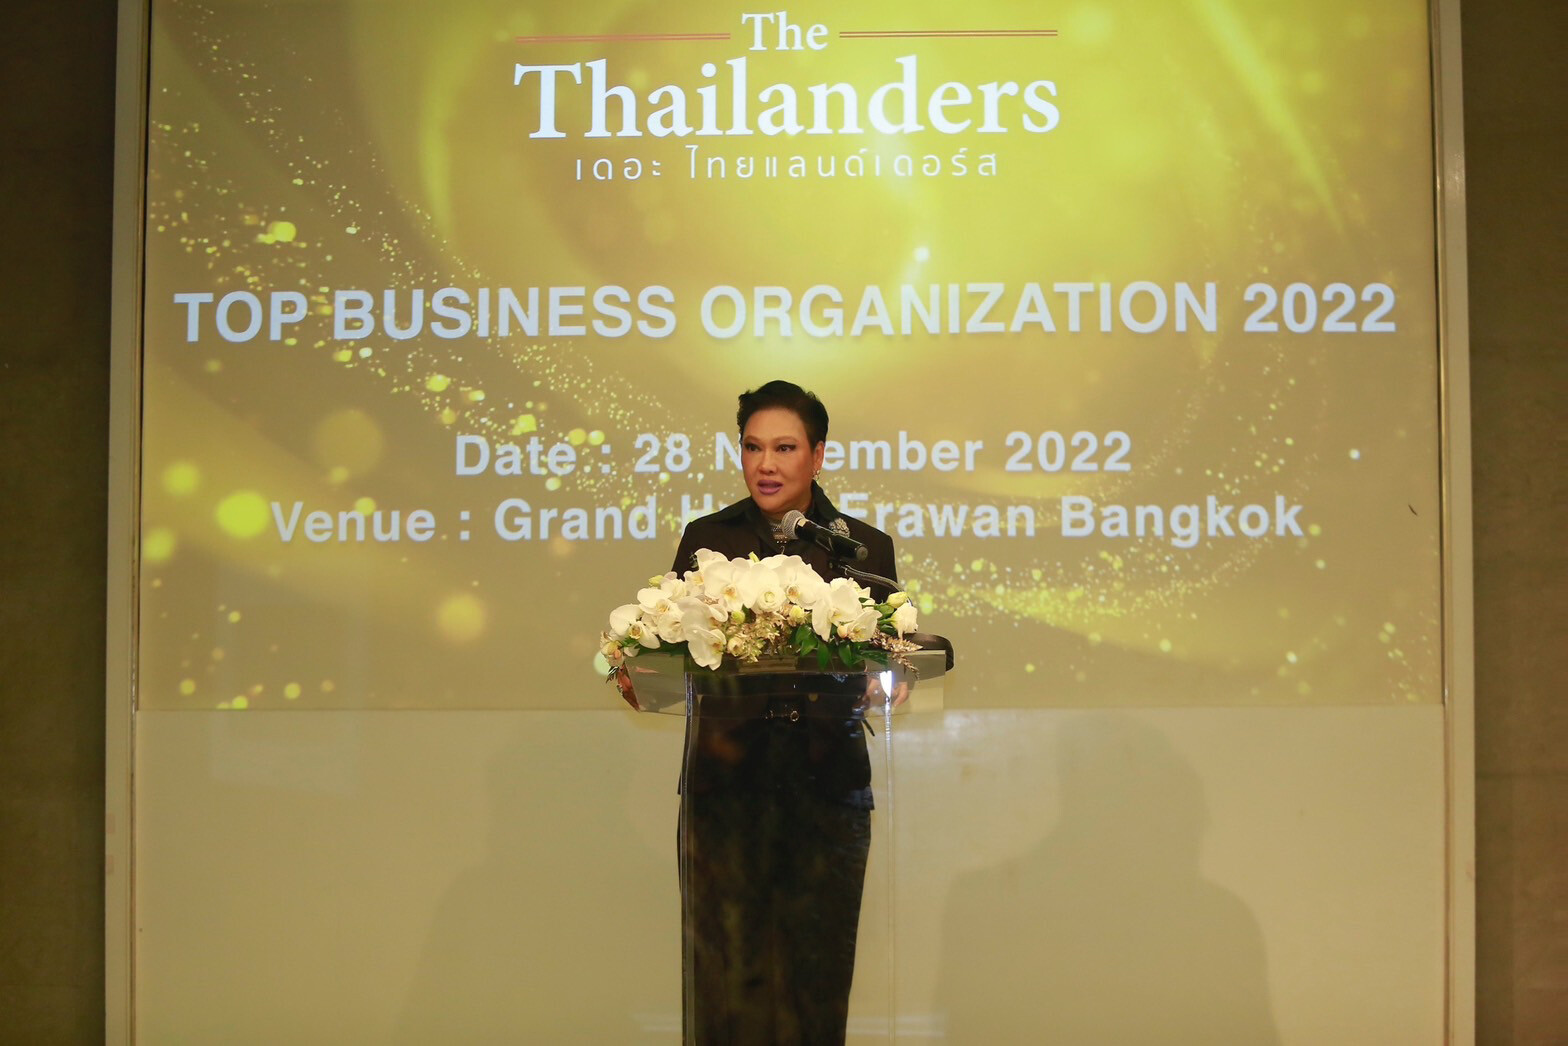 องค์กรชั้นนำในไทย เข้ารับรางวัล "เดอะ ไทยแลนด์เดอร์ส ท็อป บิสซิเนส ออกาไนเซชั่น 2022"